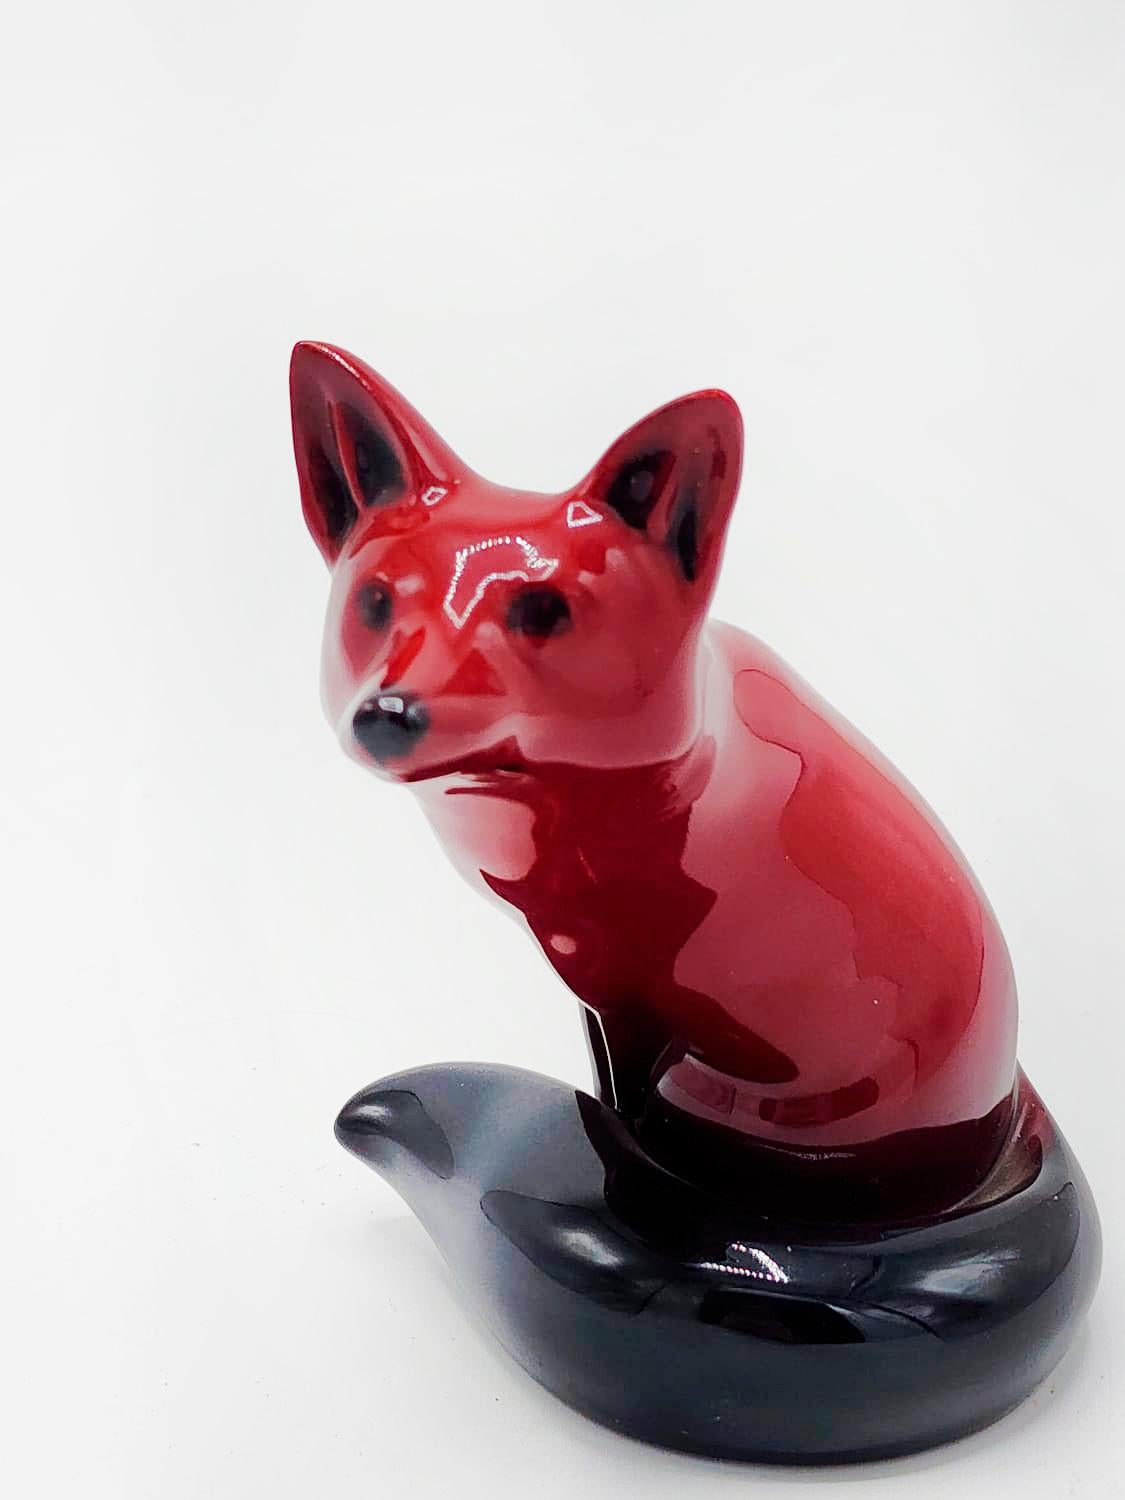 Cette adorable figurine est fabriquée en porcelaine. Cette adorable petite pièce a été produite par Royal Doulton entre 1913 et 1962 et fait partie de la collection de style flambe, qui utilise une glaçure à l'oxyde de cuivre pour la finition rouge